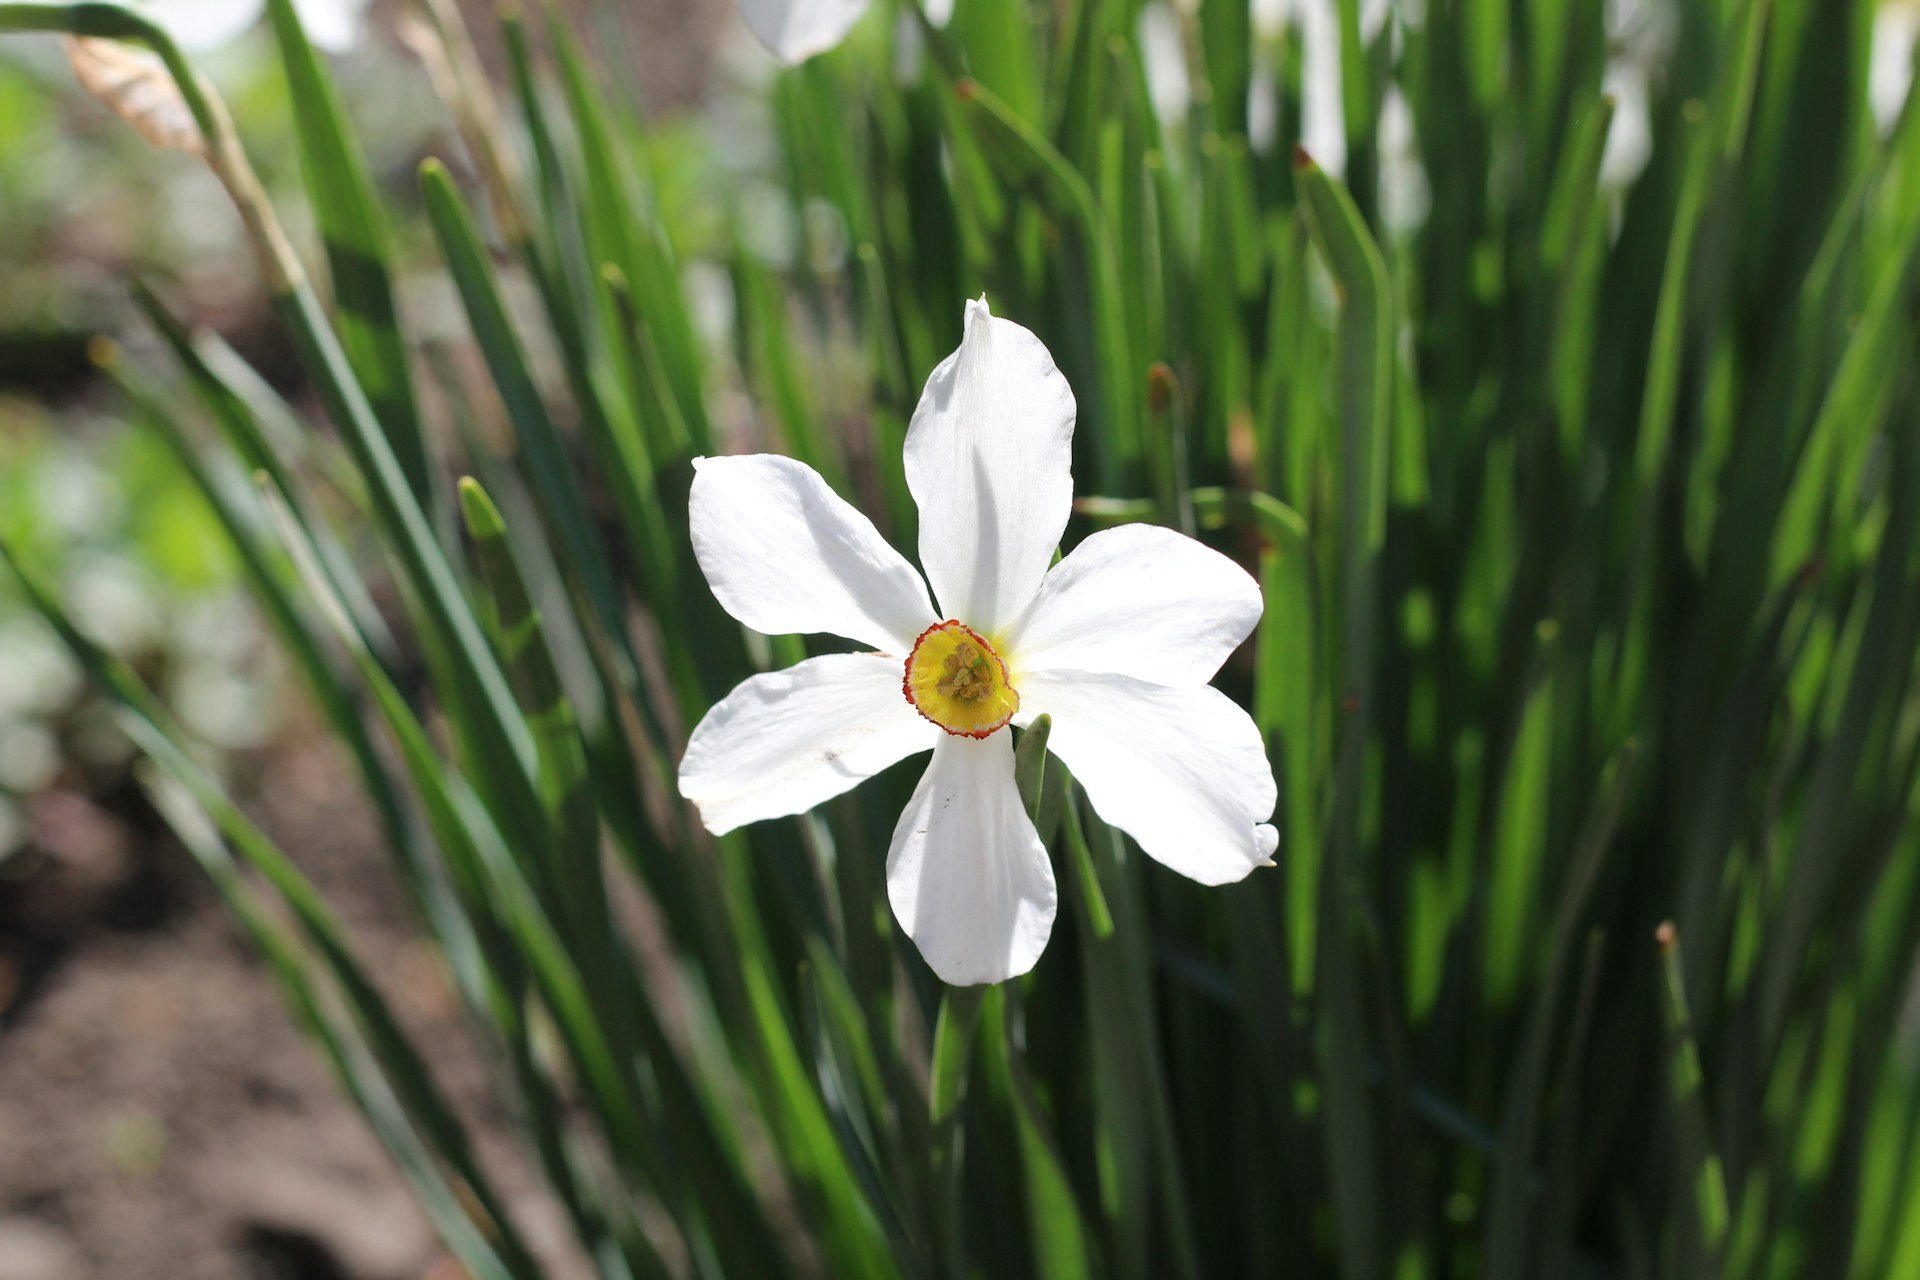 Narcissus poeticus marina-yalanska-BwfmQNlpHxA-unsplash.jpg